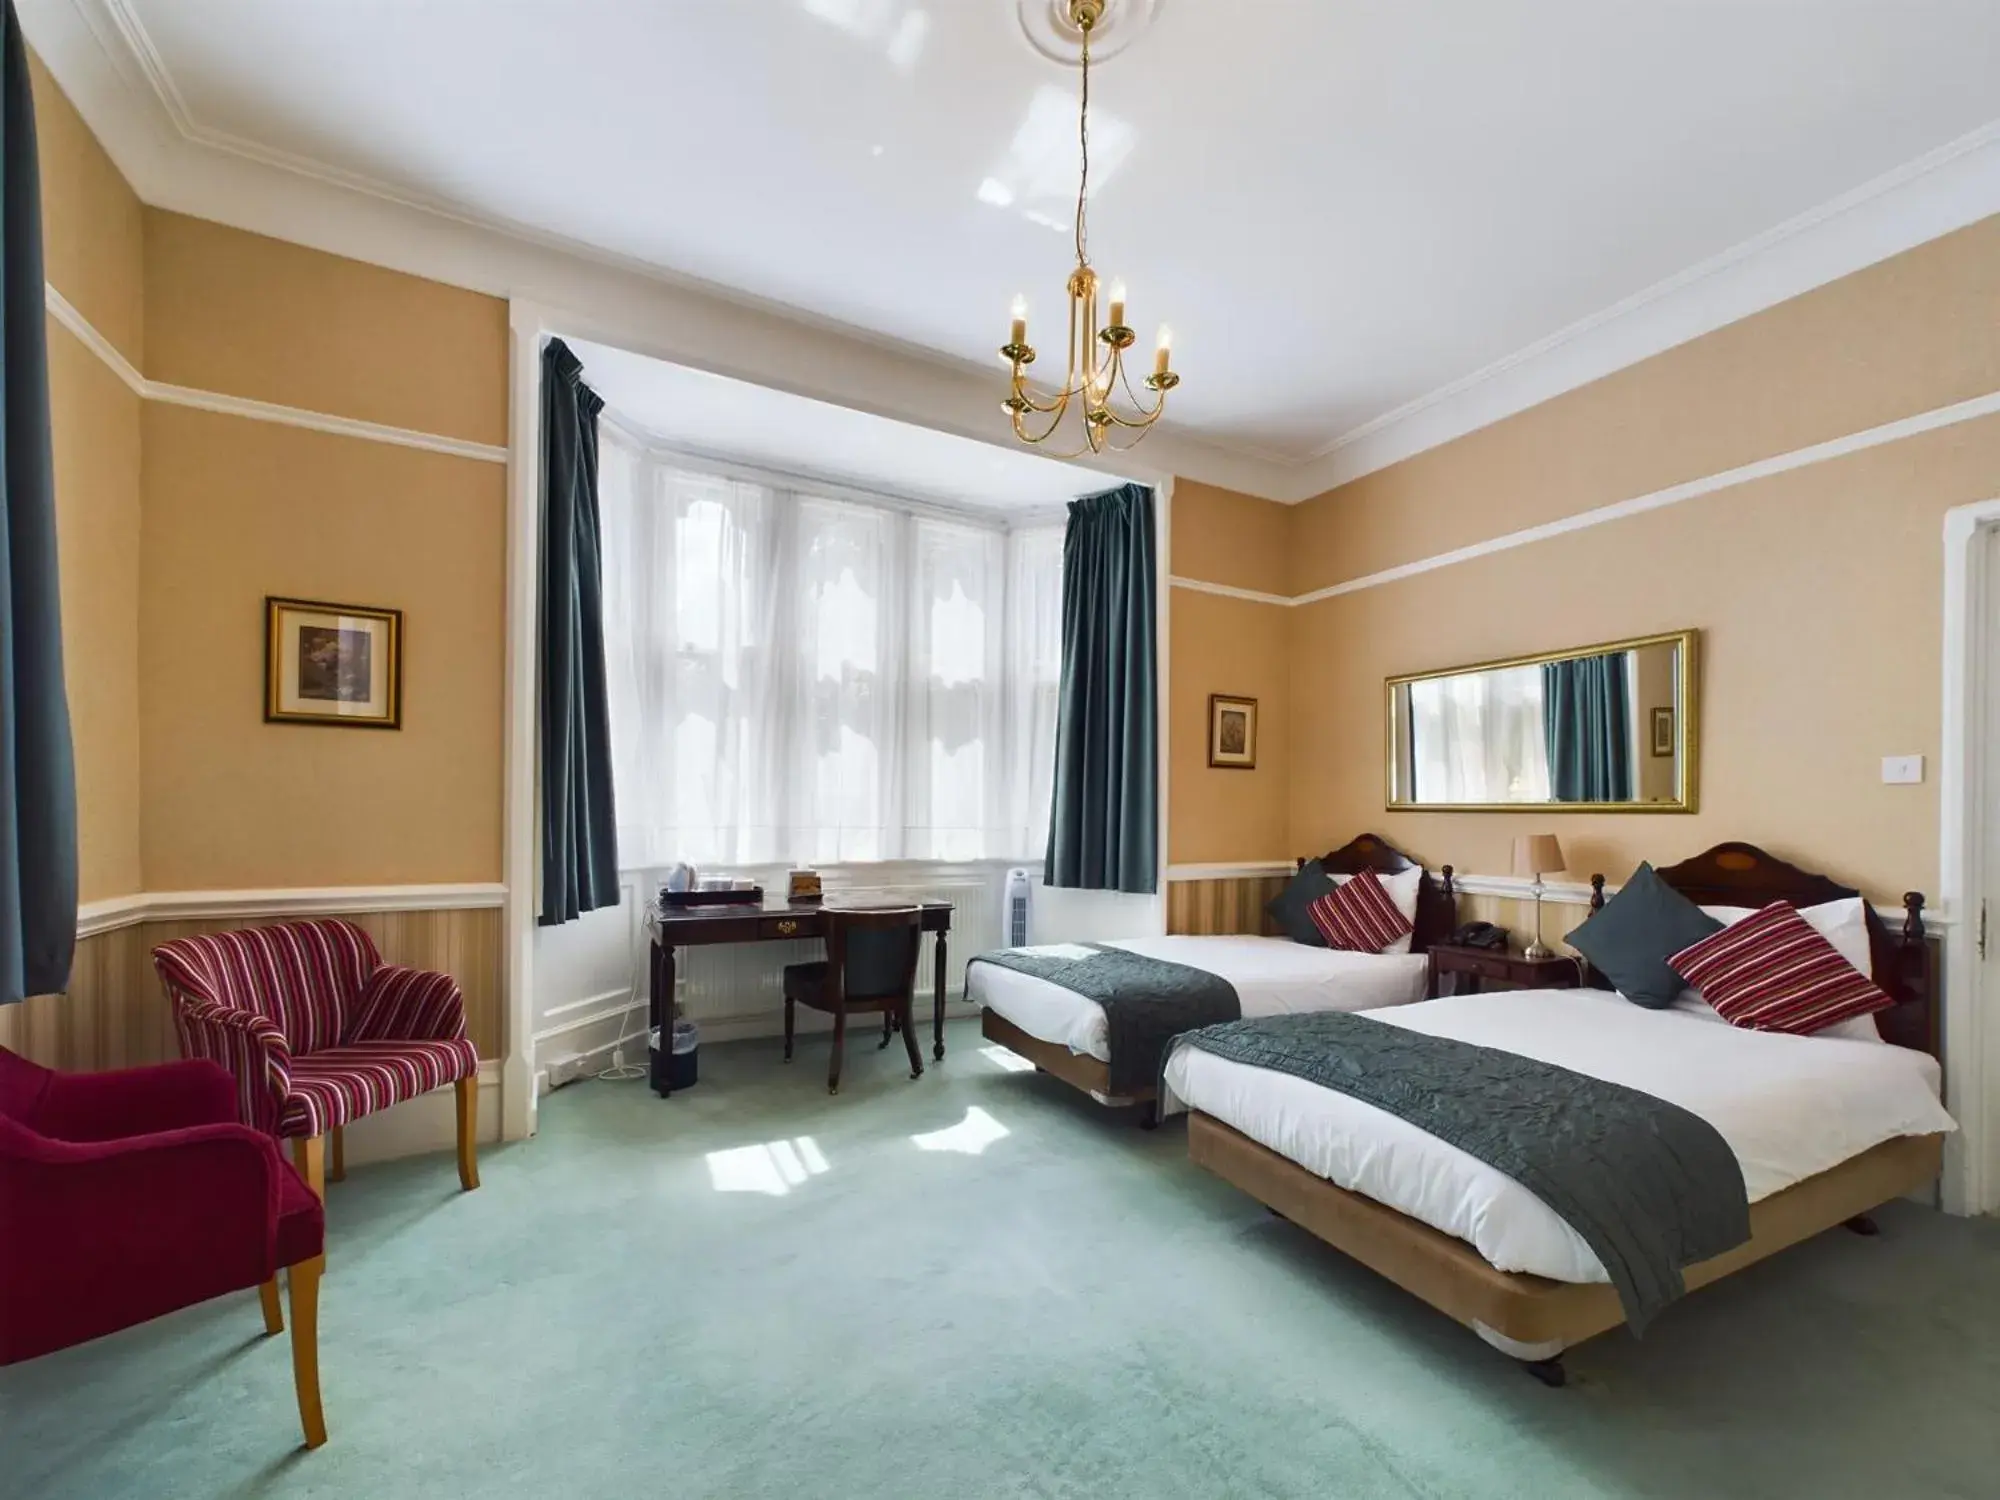 Bedroom in Beech House Hotel